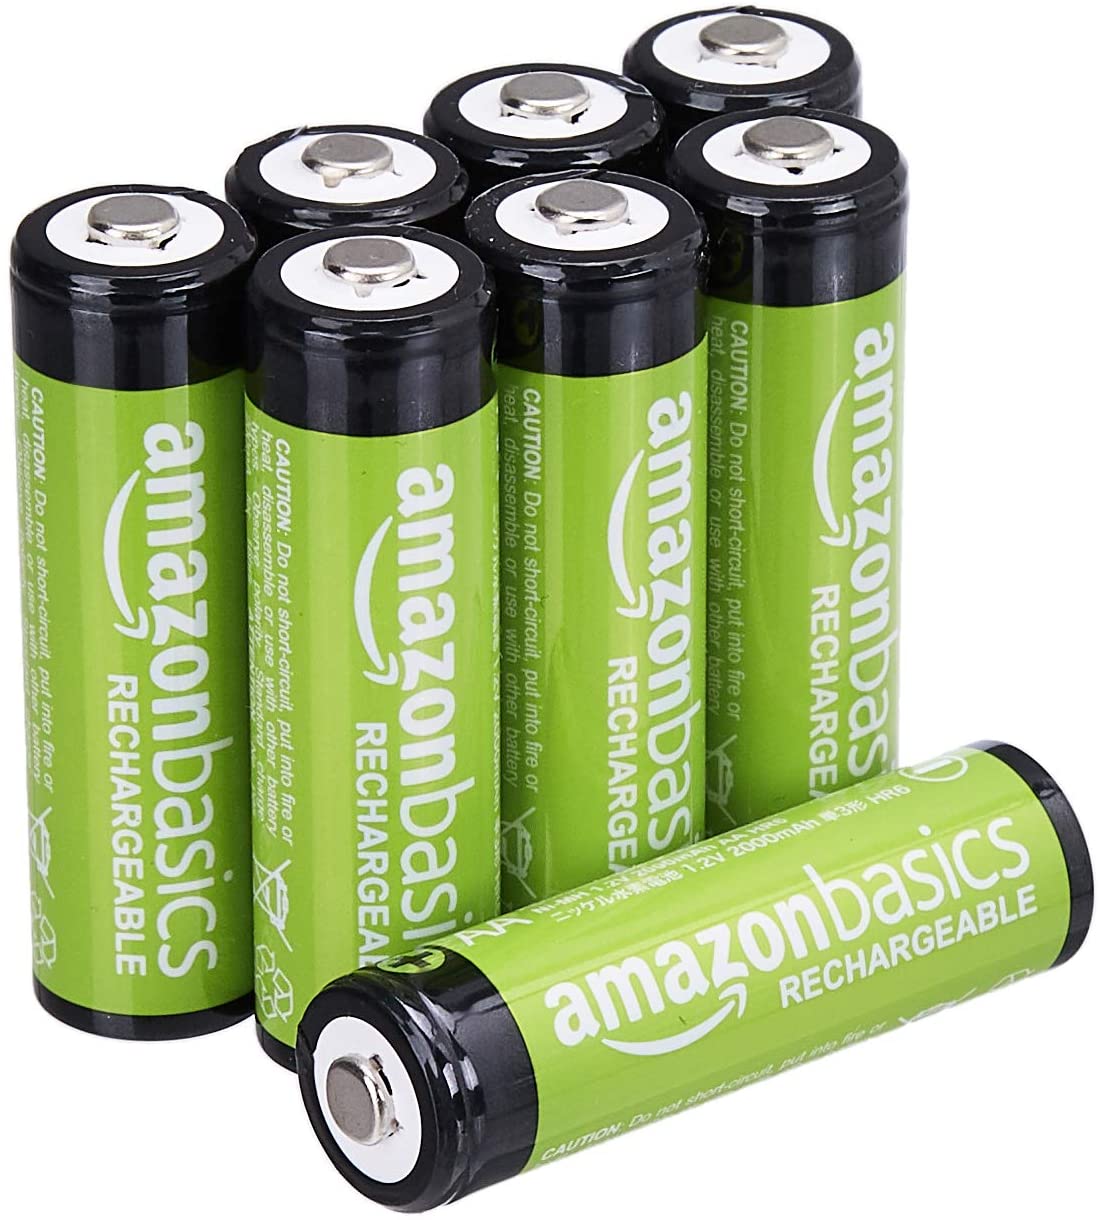 Amazon Basics - Paquete de 8 baterías recargables AA, rendimiento de 2,000 mAh, precargadas, se recargan hasta 1000 veces.